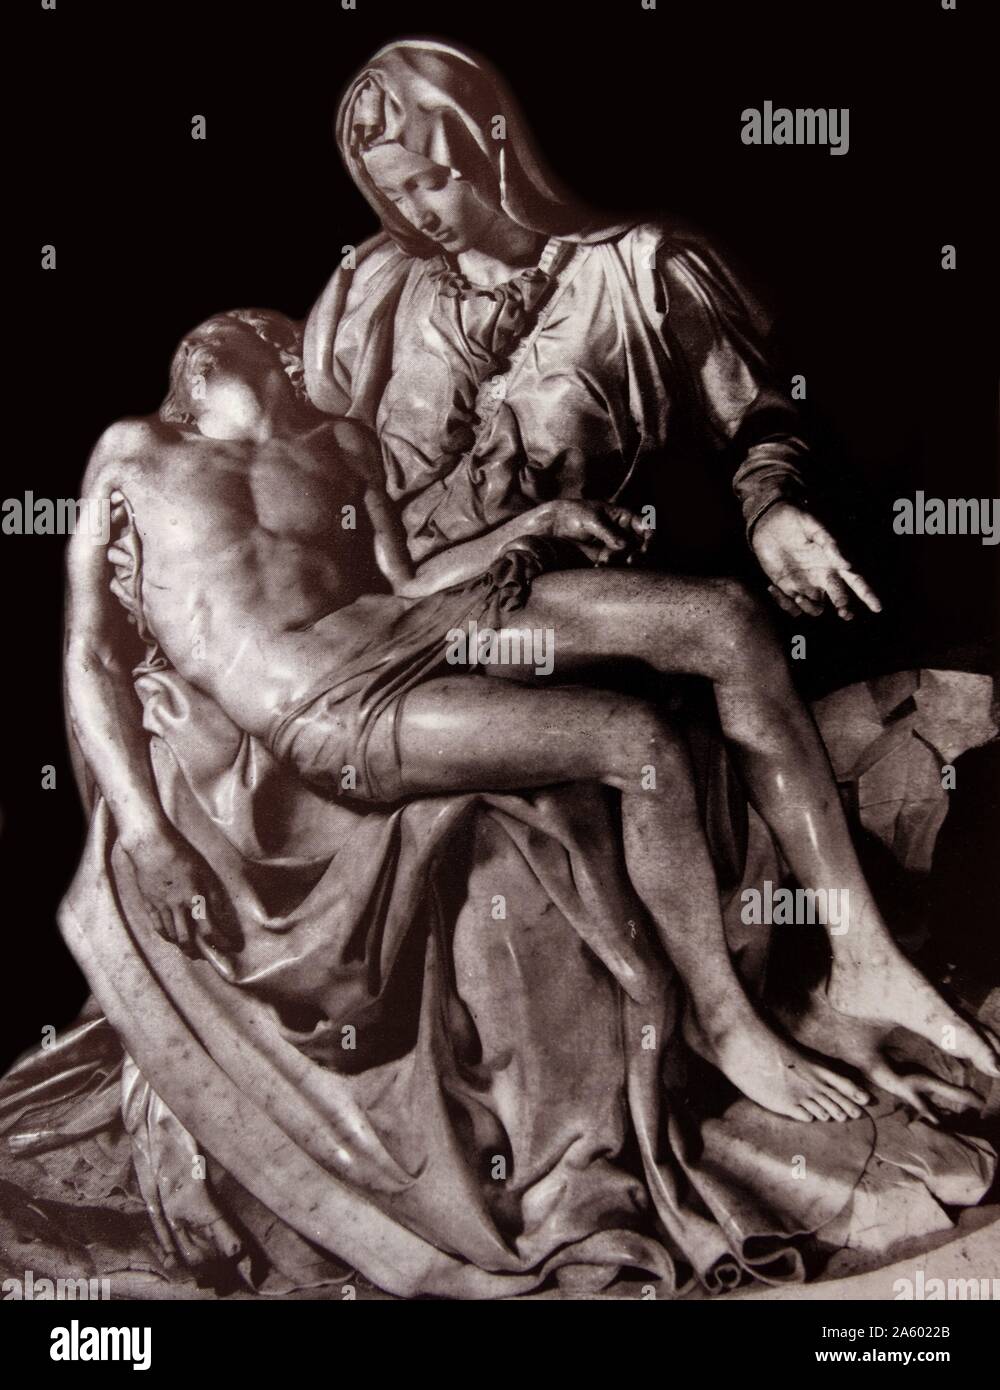 La Pietà est un travail de sculpture de la Renaissance par Michelangelo Buonarroti, installé dans la Basilique Saint-Pierre, Vatican. 1498-99 Banque D'Images